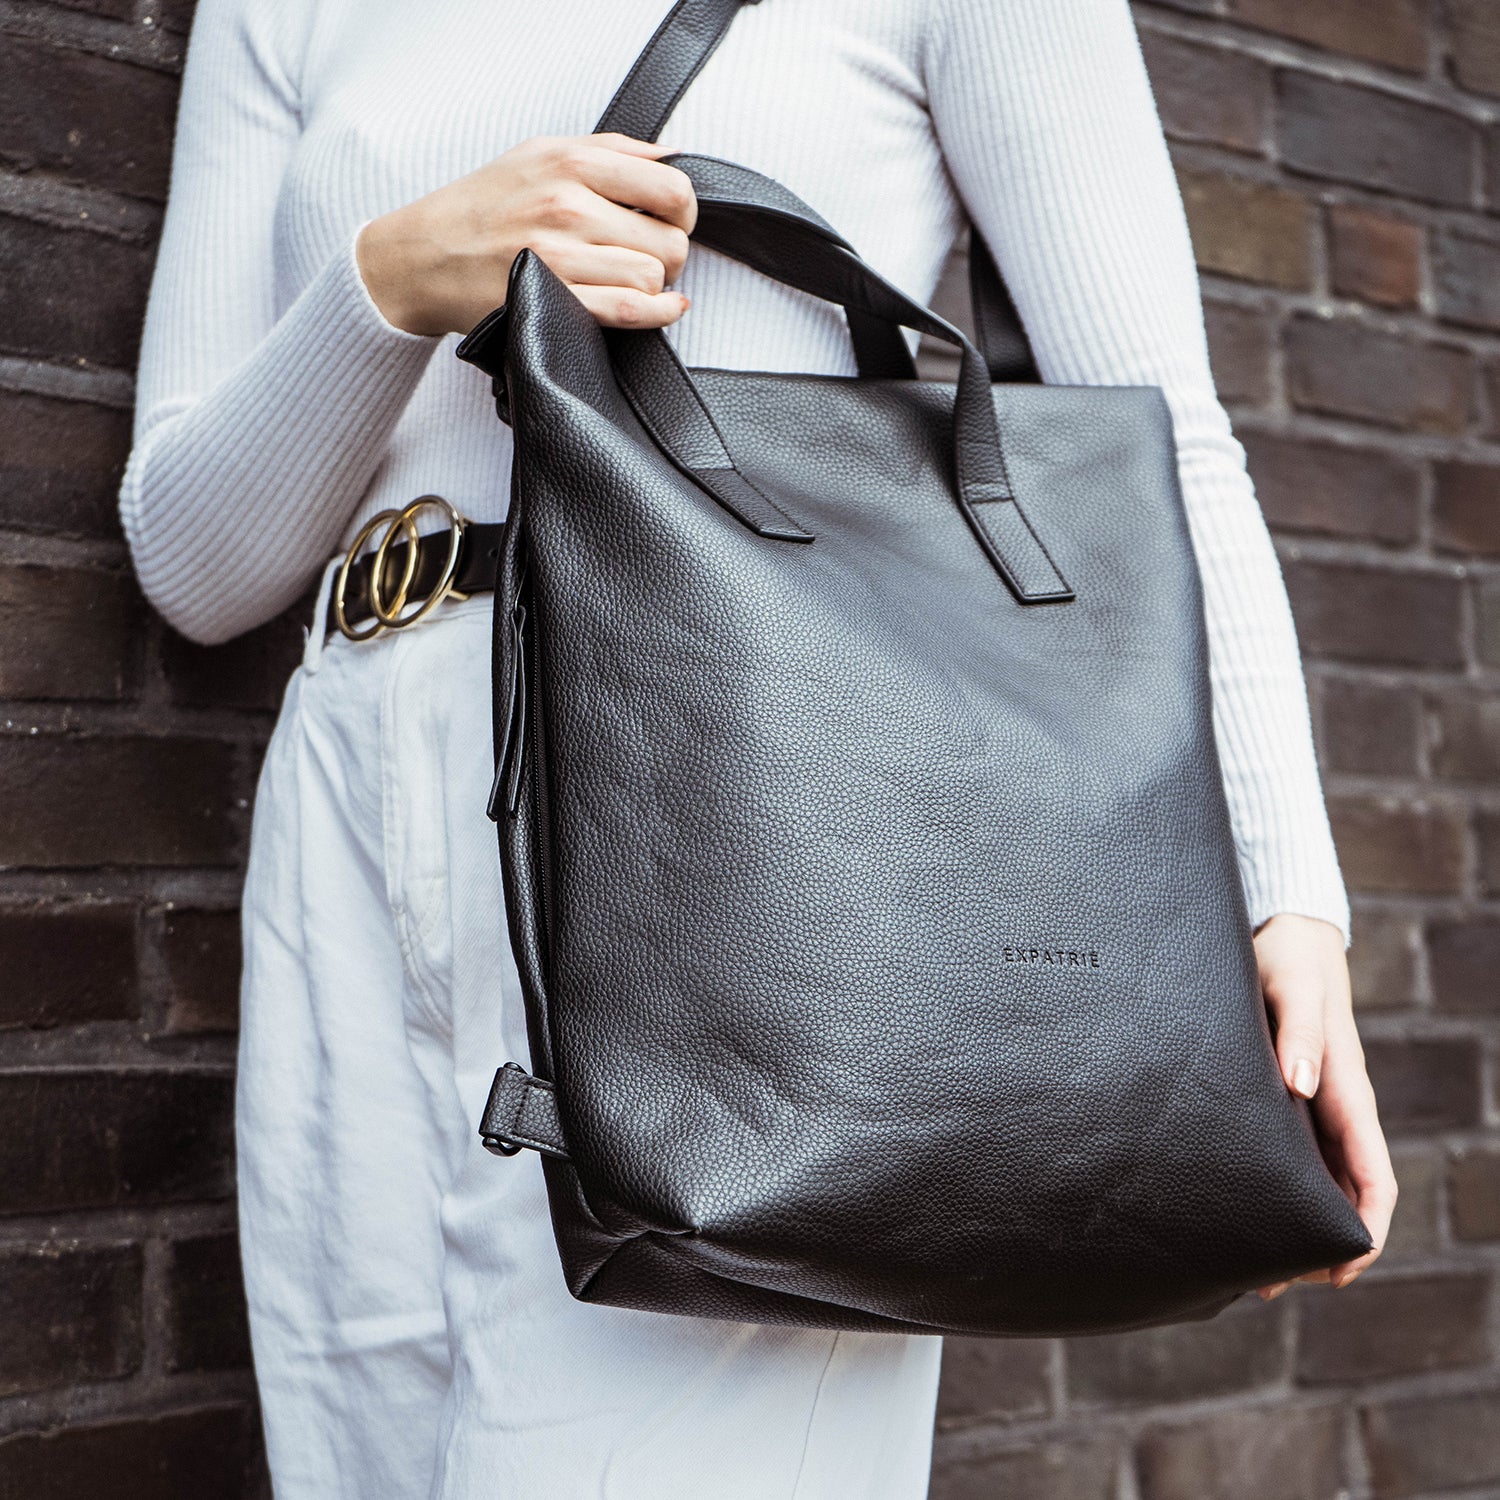 Elegante Rucksack Tasche ideal für Business